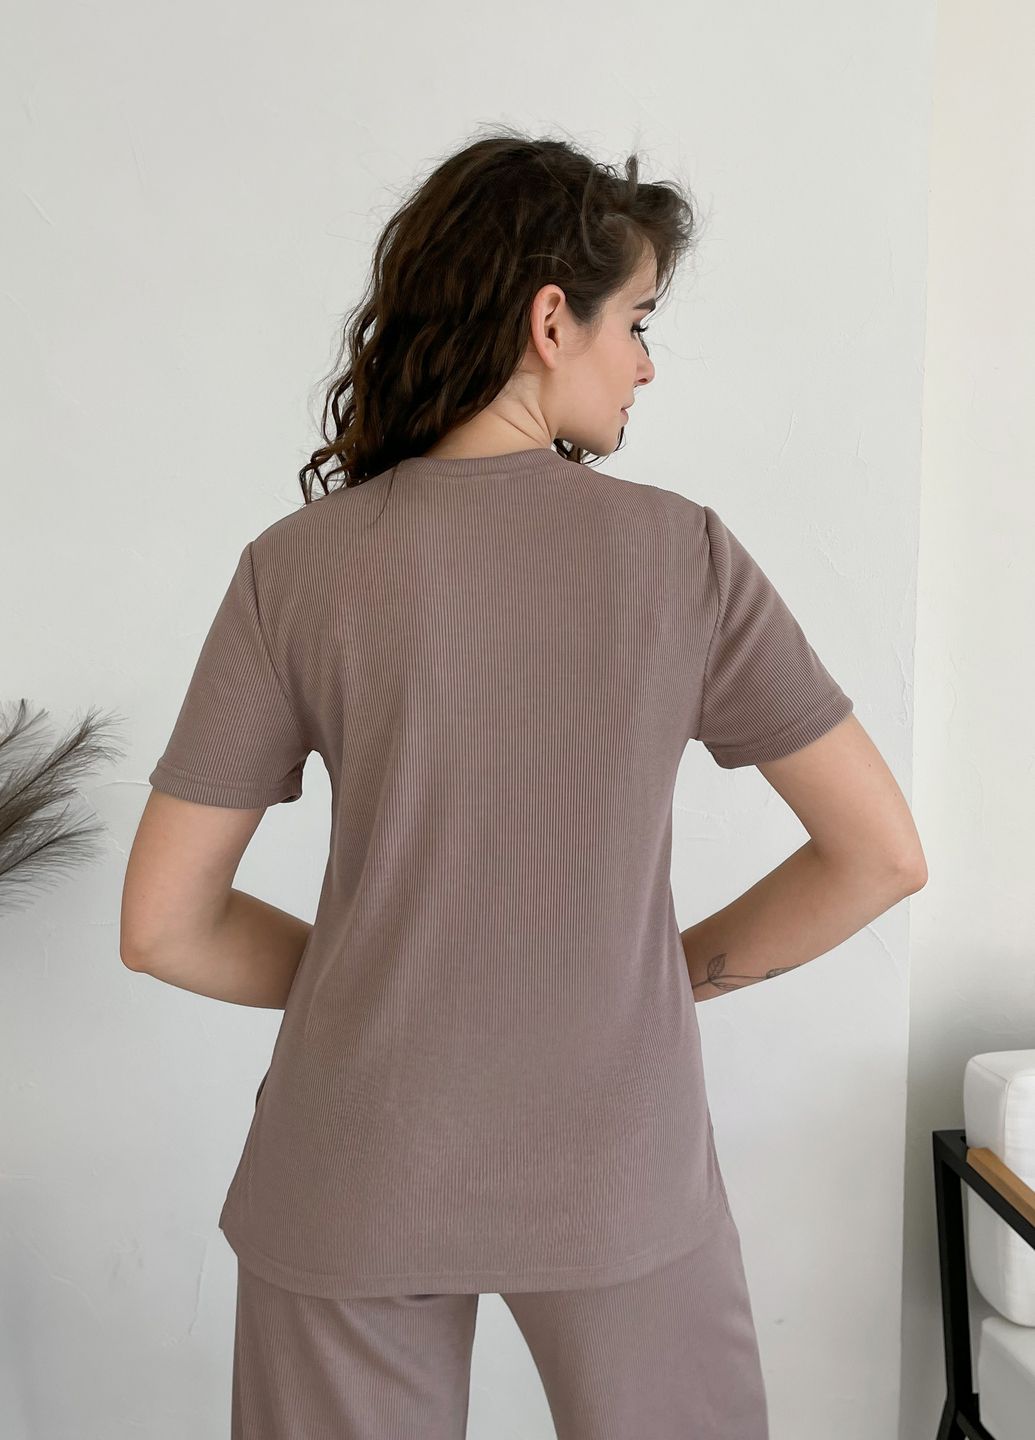 Купить Костюм женский в рубчик футболка со штанами клеш мокко Merlini Монцано 100000524, размер XS-M (40-44) в интернет-магазине